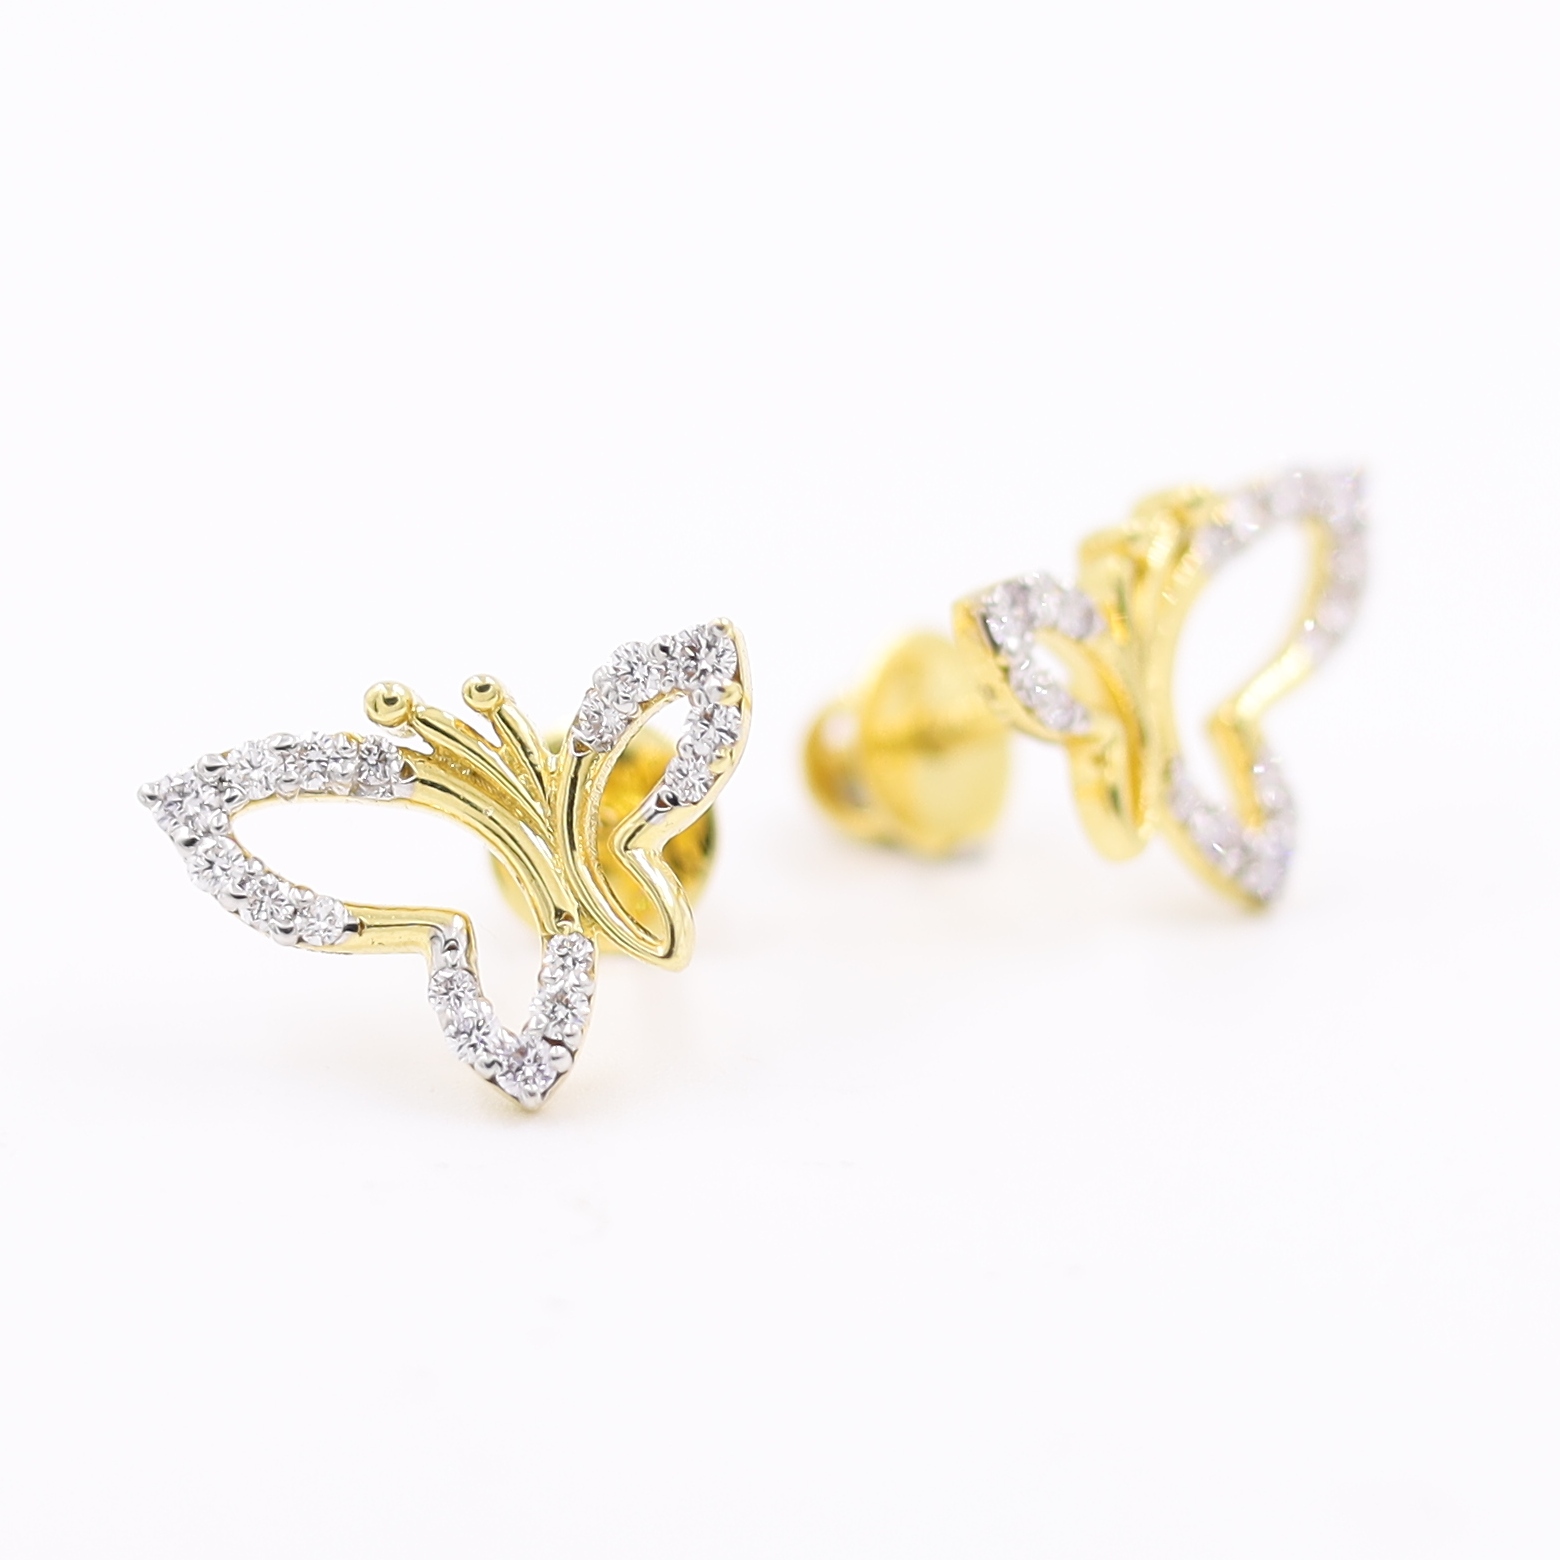 Fancy 18KT Butterfly Earring Studded Beautyfully With Diamonds